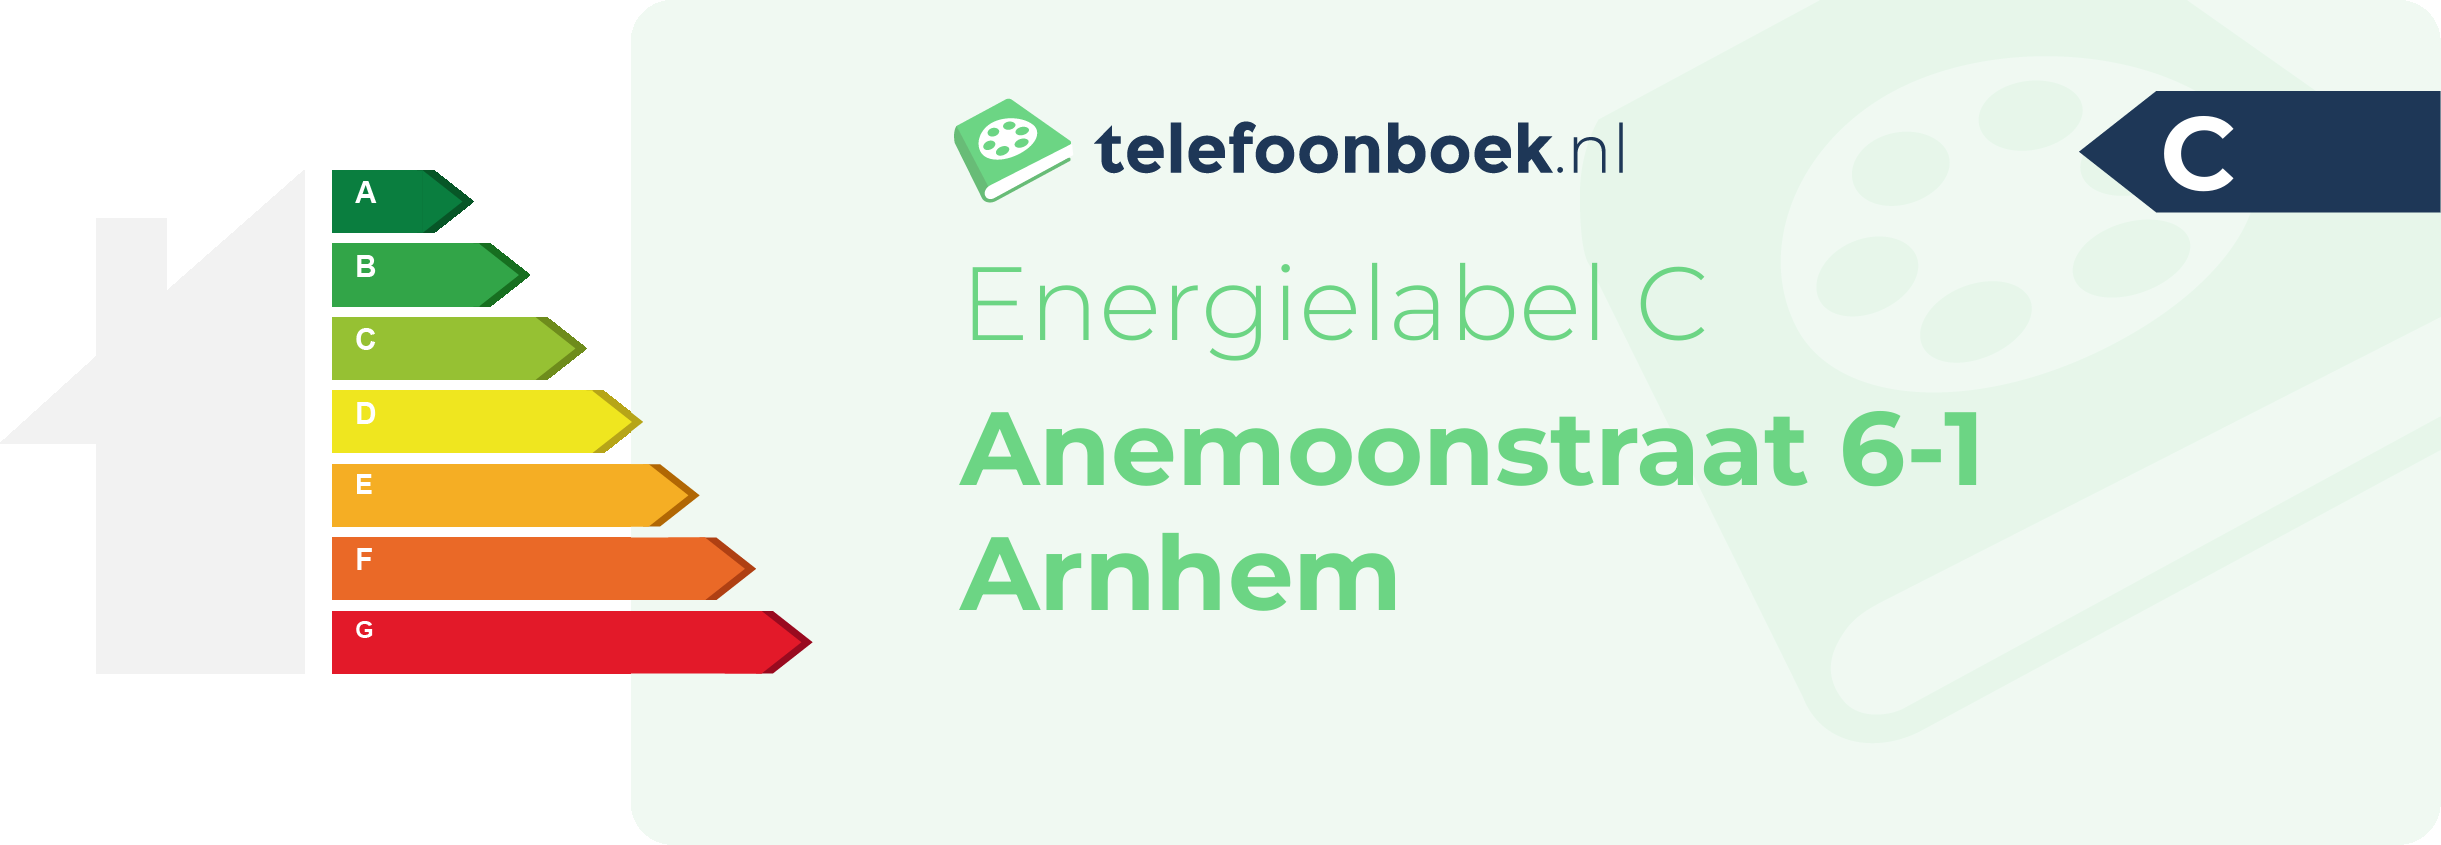 Energielabel Anemoonstraat 6-1 Arnhem